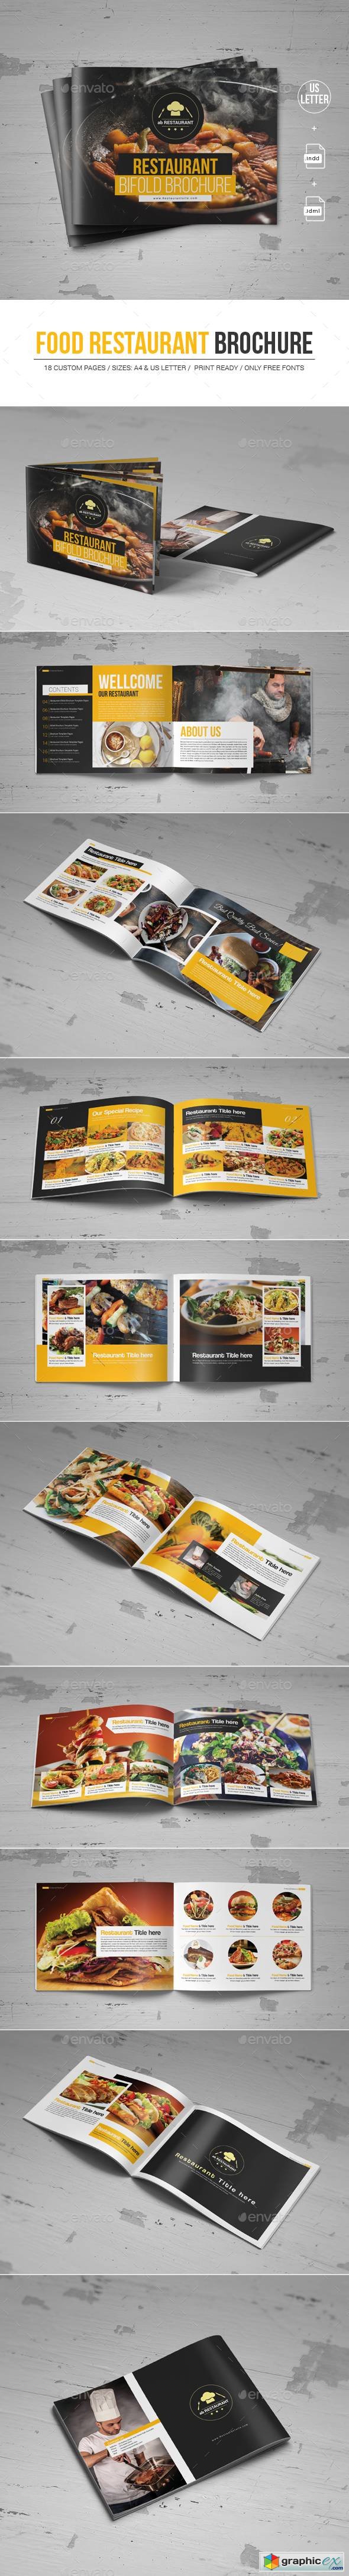 Food Restaurant Brochure